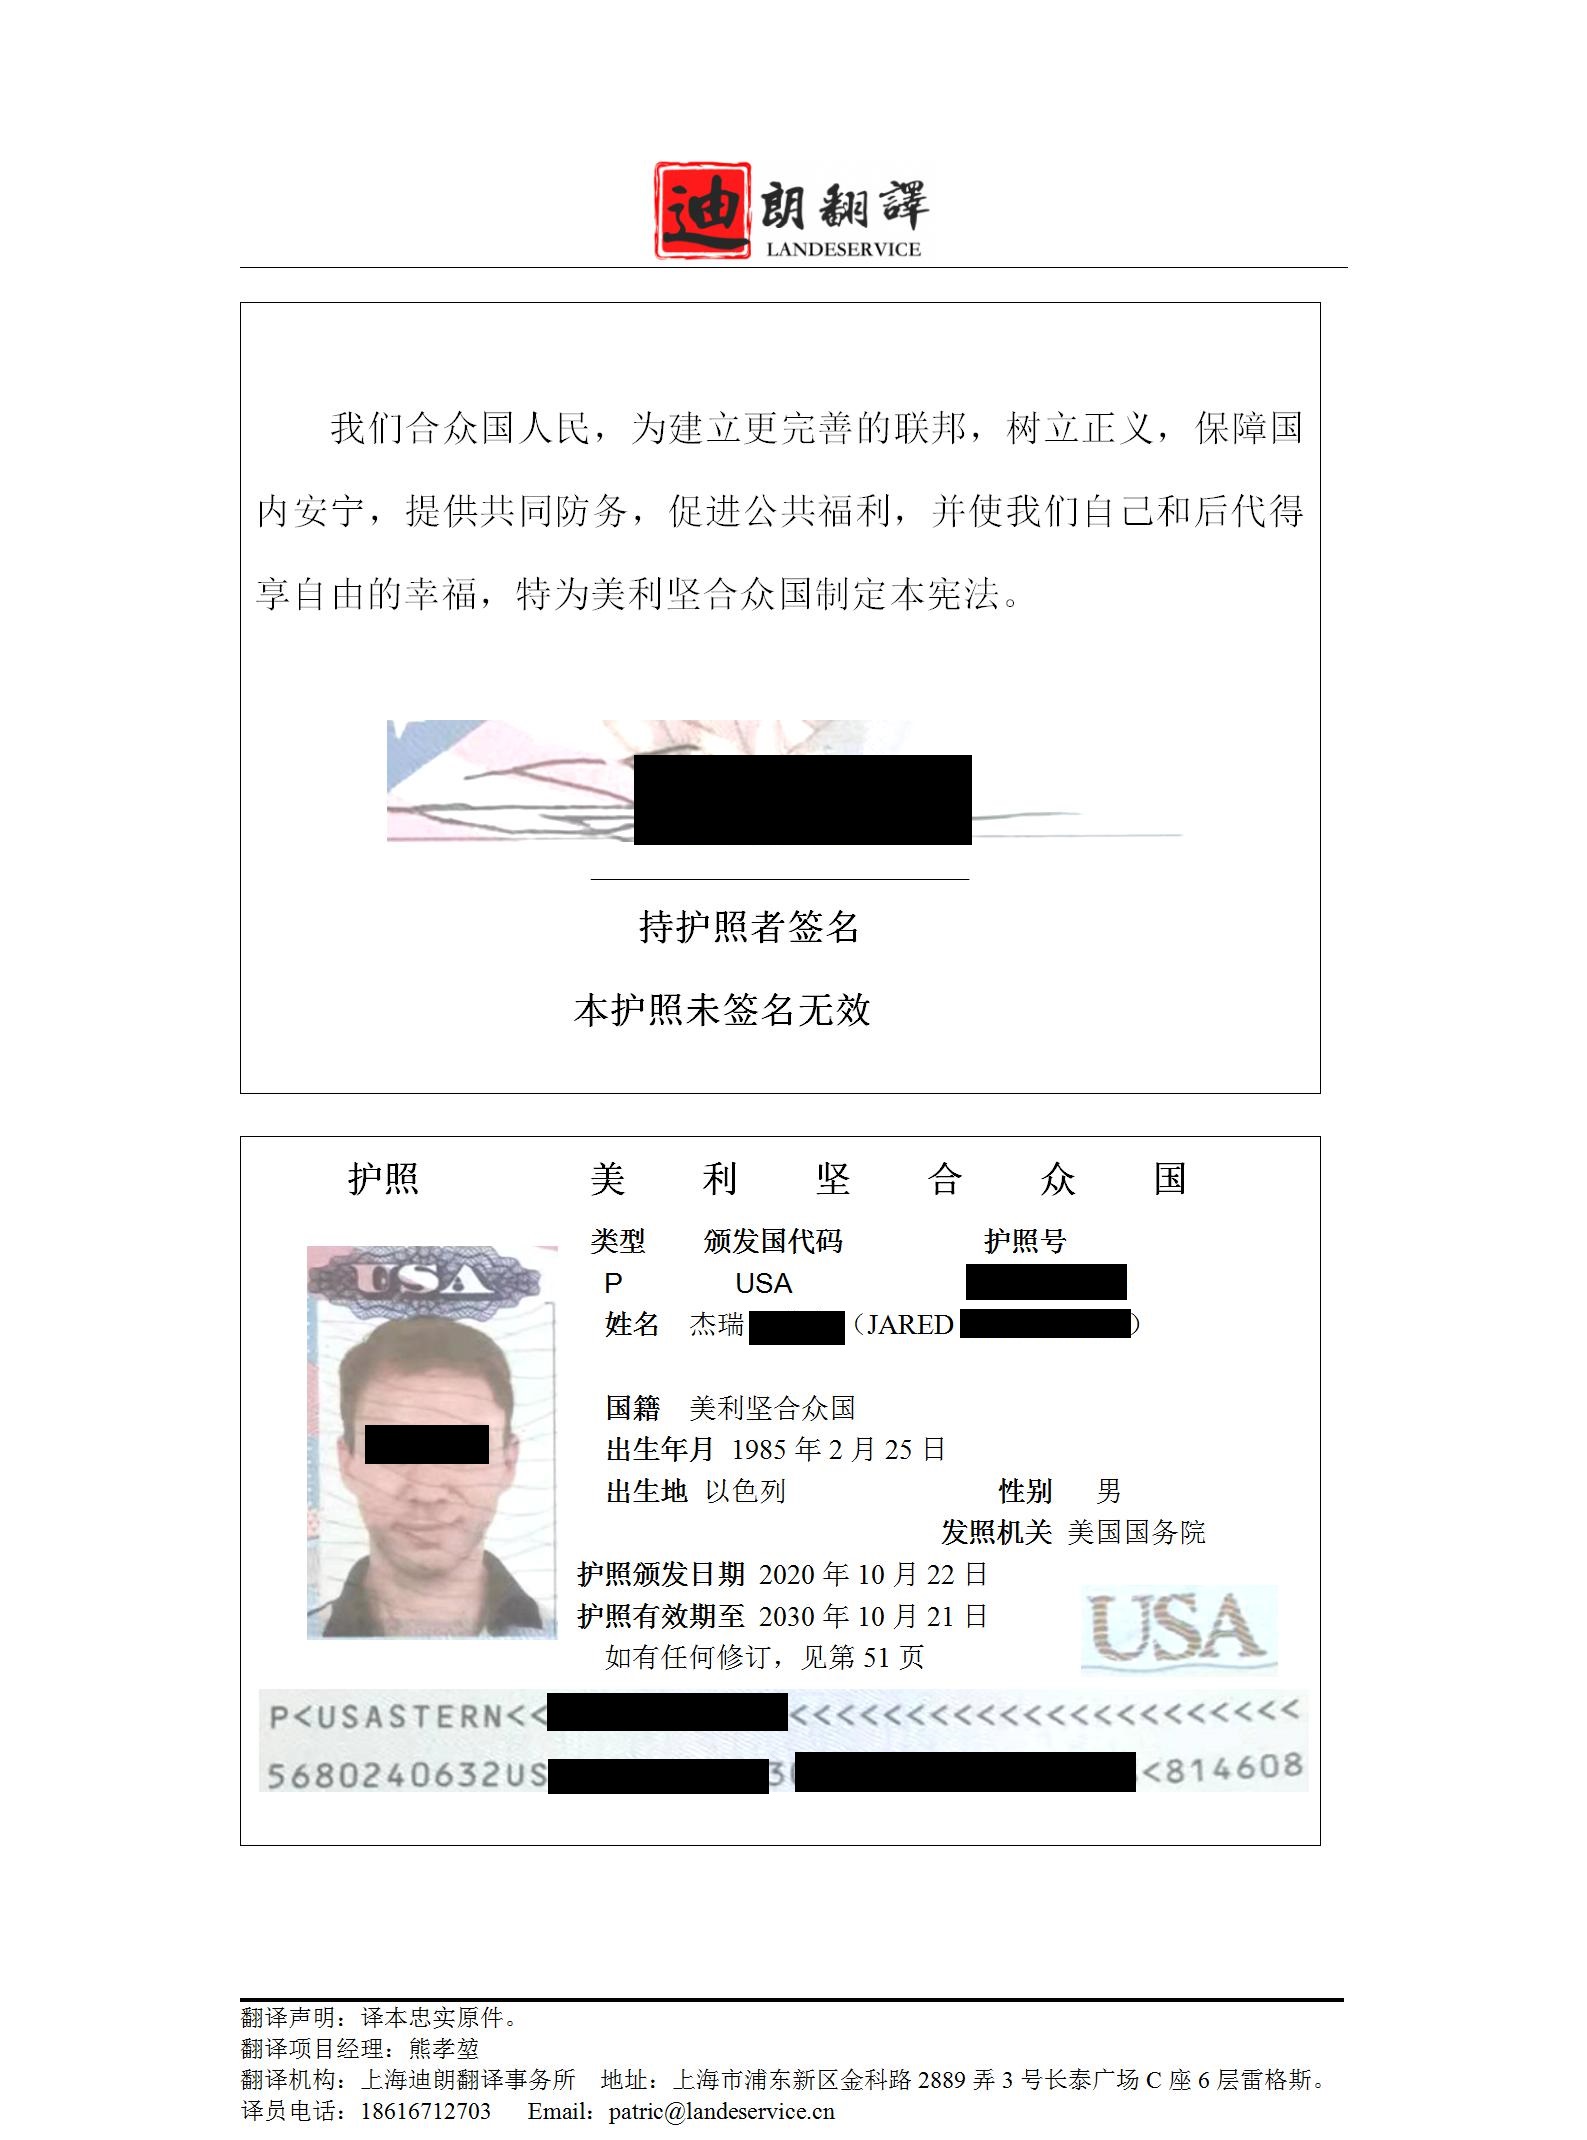 美国护照翻译件chen - 以色列籍美国护照翻译认证盖章